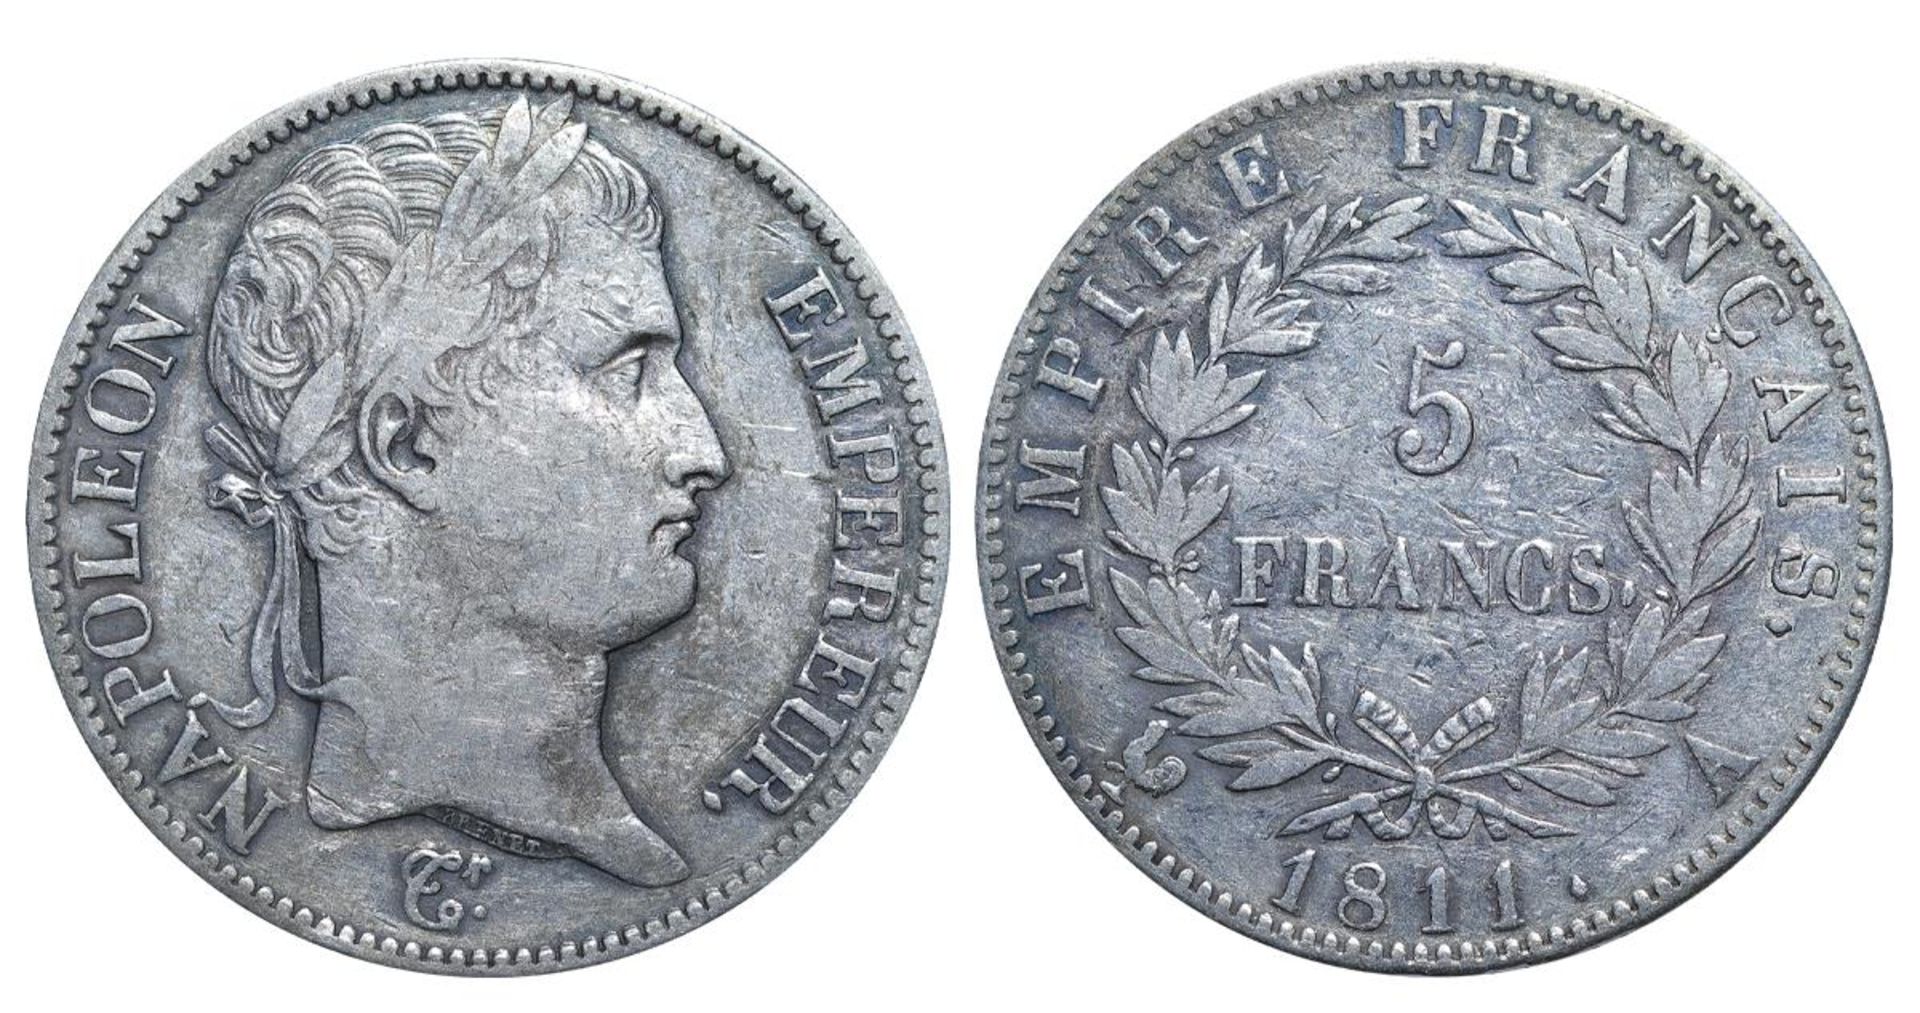 France, 5 Francs, 1811 year, A